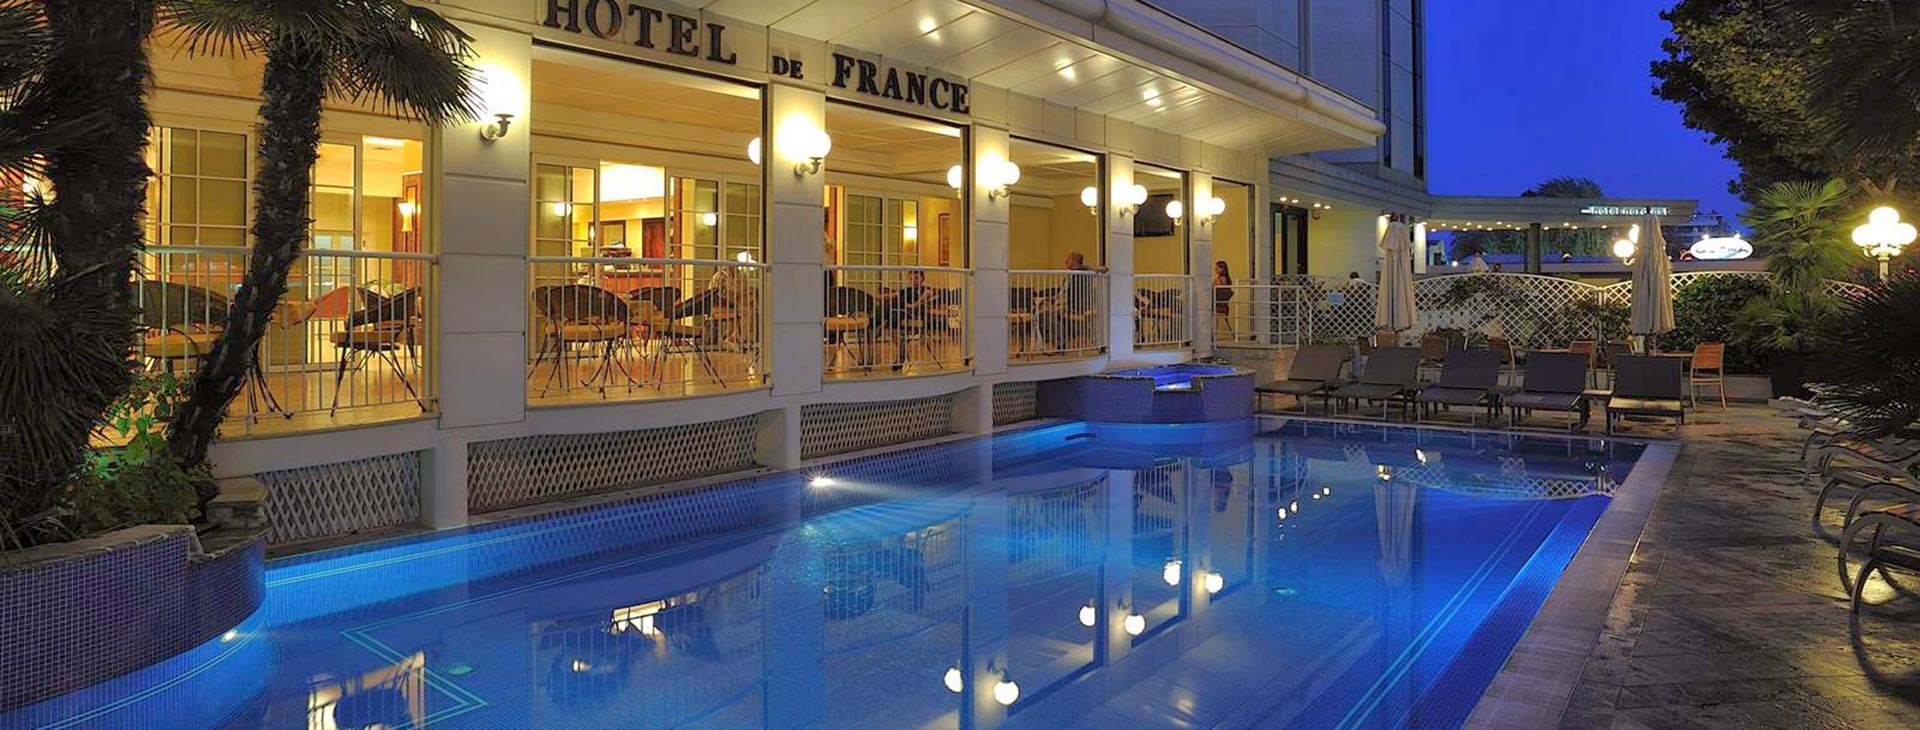 De France Hotel  Obrázek1